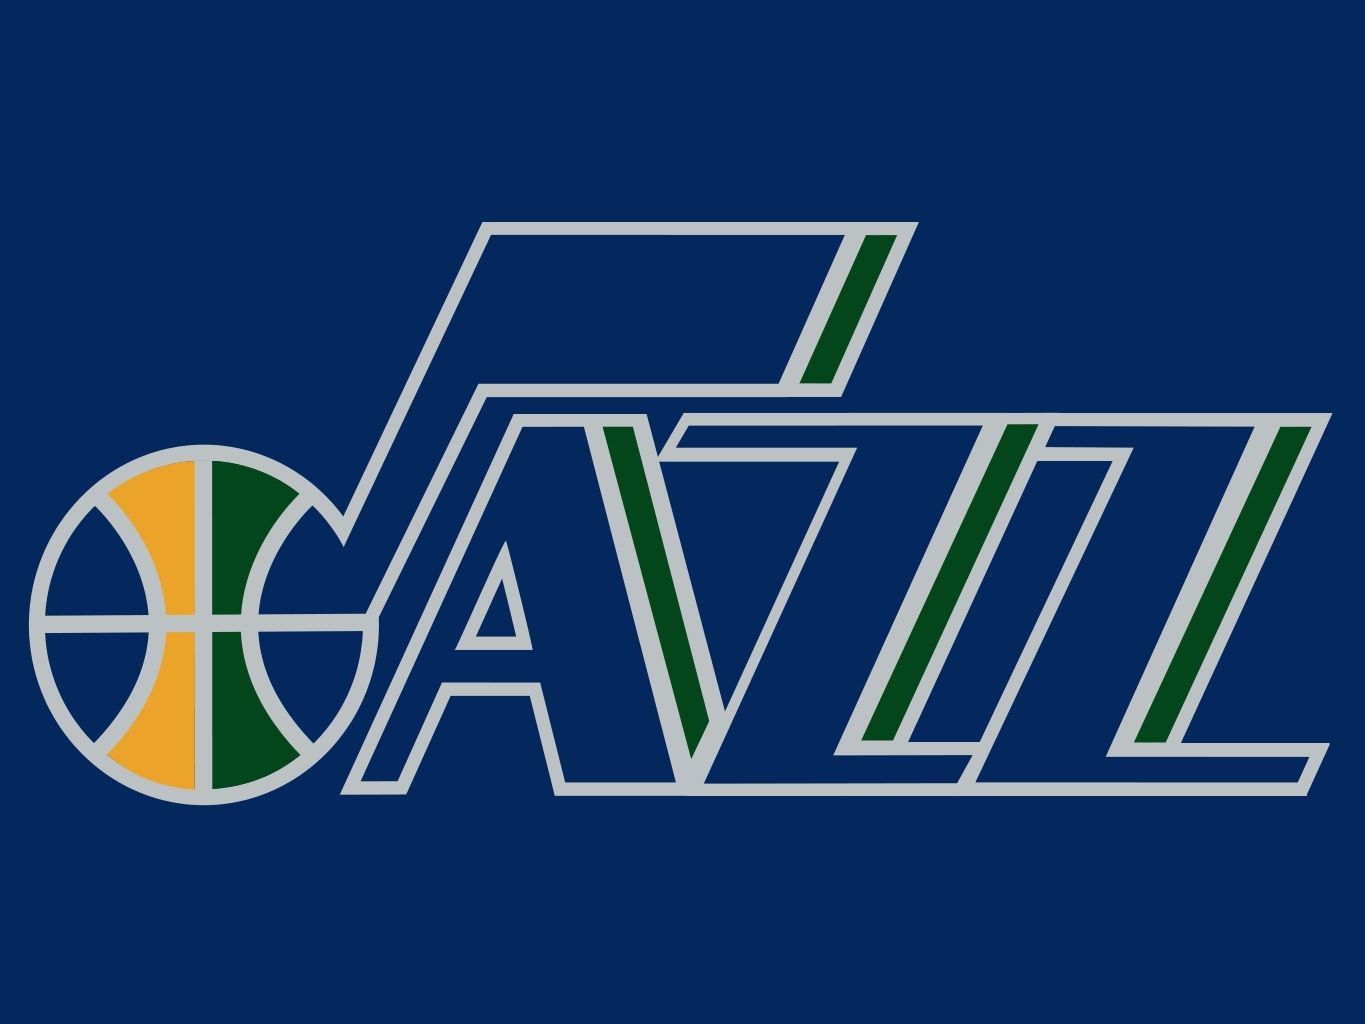 Utah Jazz | BouncyOrangeBall